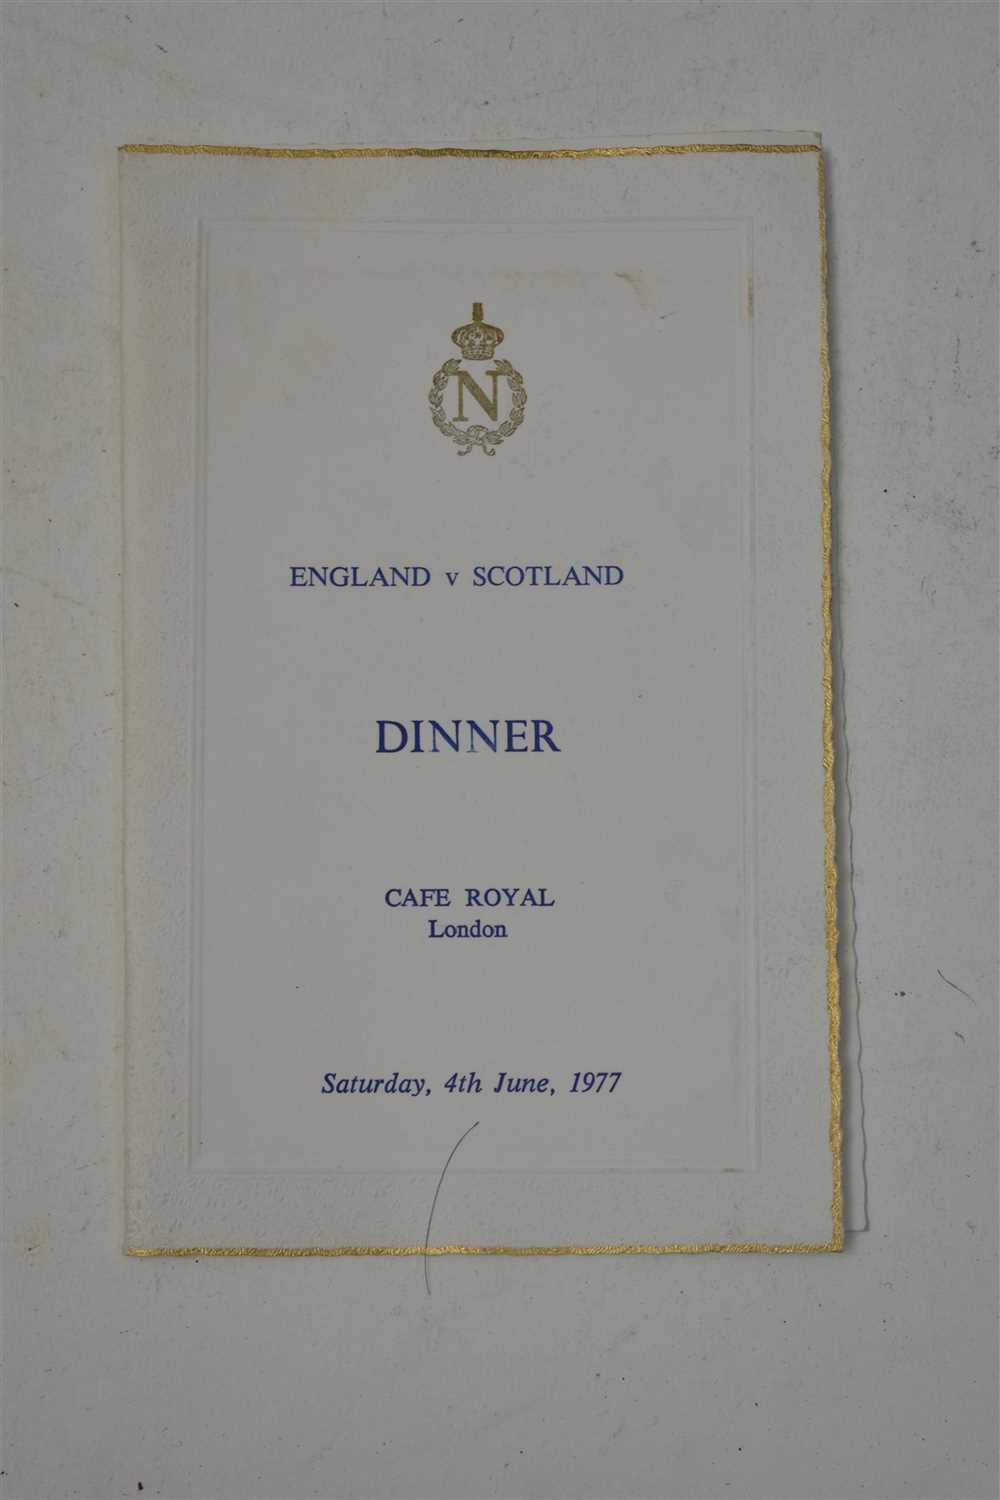 Lot 306 - 1977 England v Scotland dinner menu